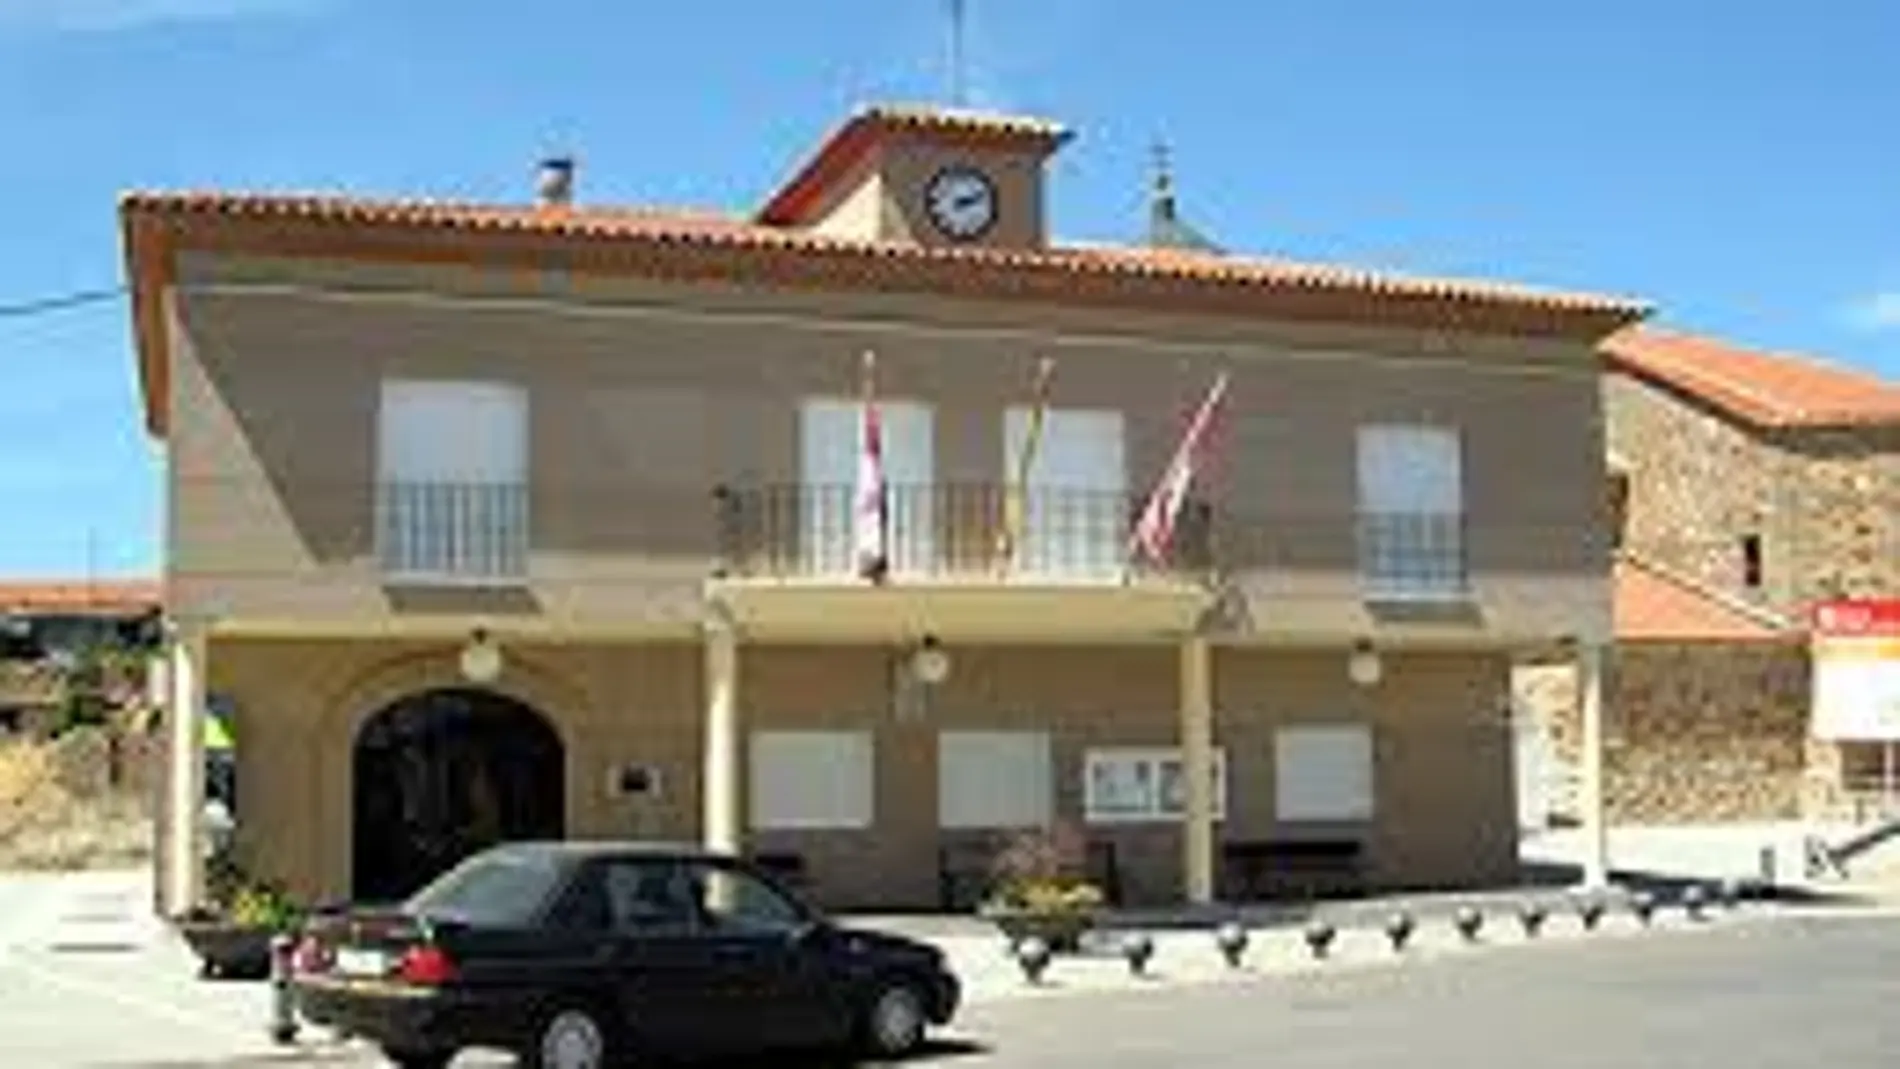 Exterior del ayuntamiento de Manganeses de la Polvorosa, en Zamora